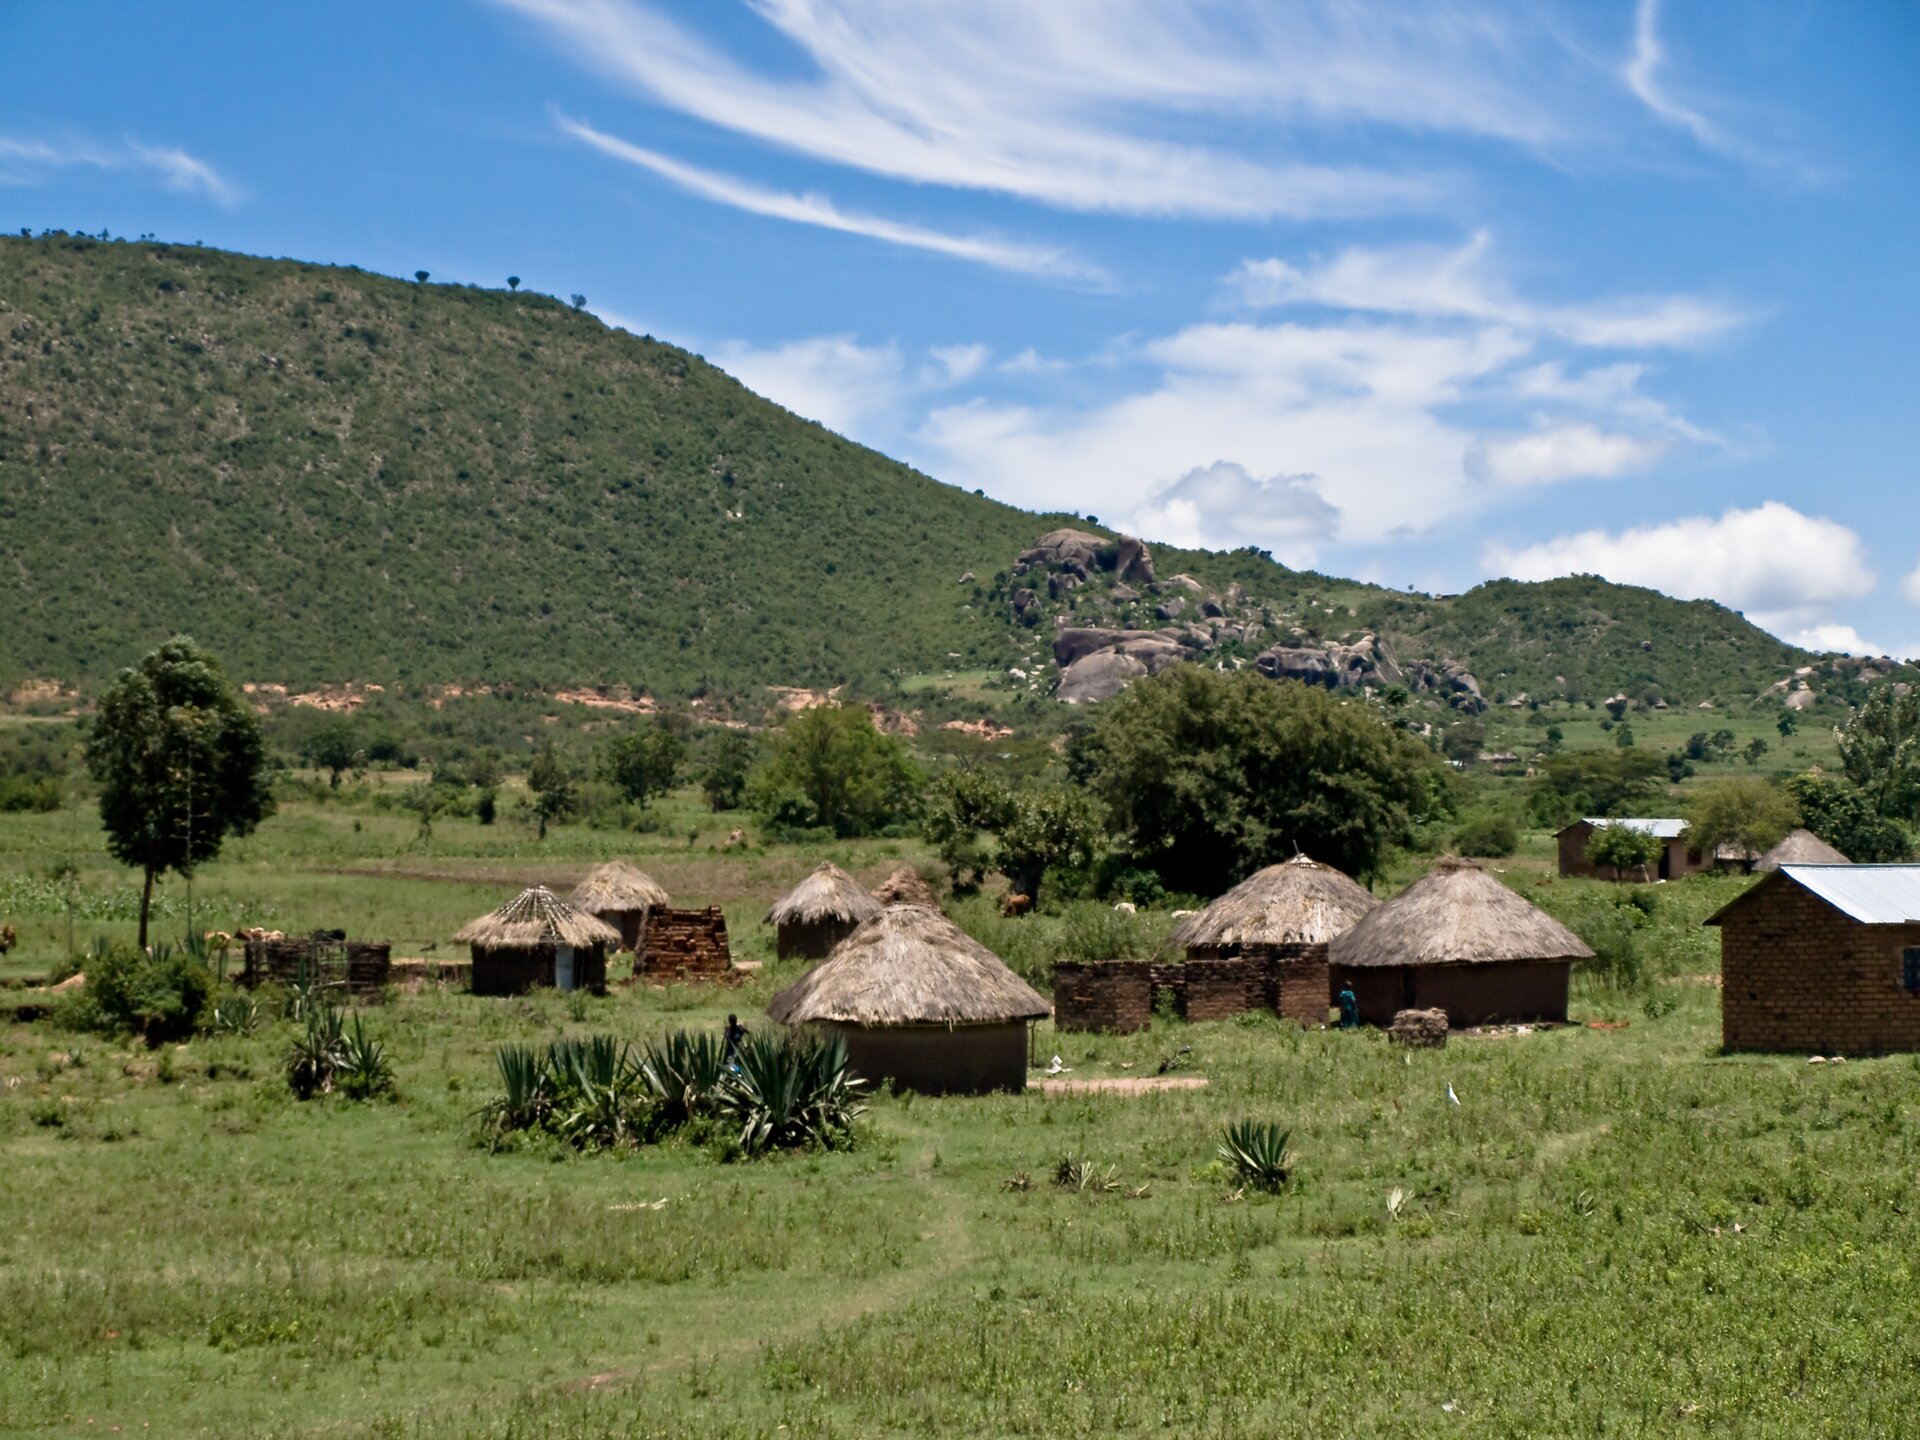 Na zdjęciu afrykańska wioska. Na pierwszym planie okrągłe chatki pokryte słomą, na drugim planie drzewa. W tle góry.